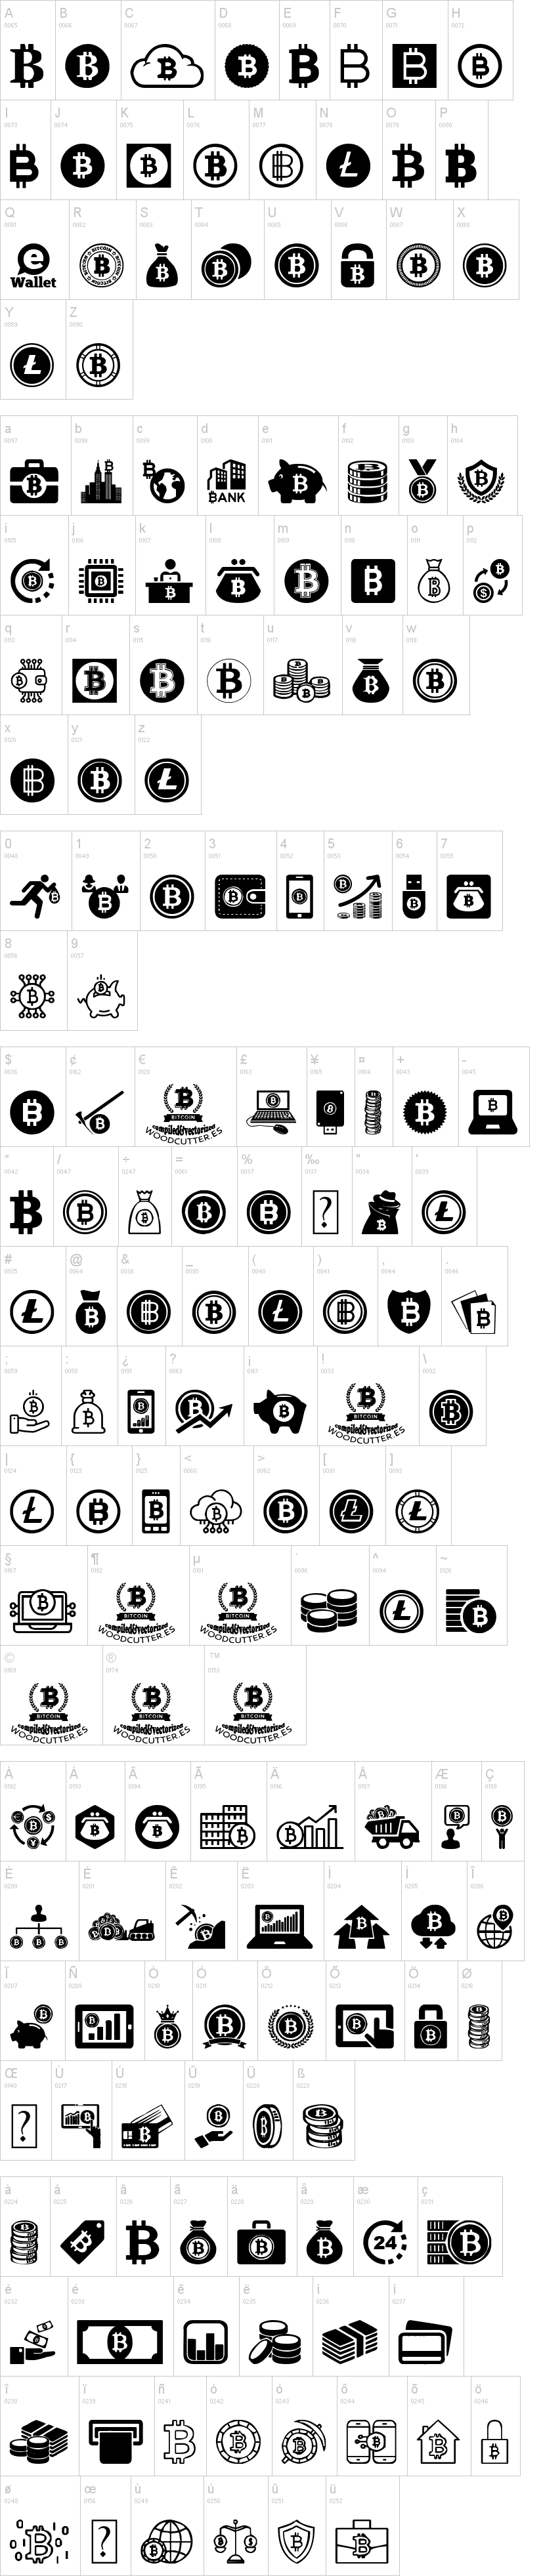 bitcoin font)